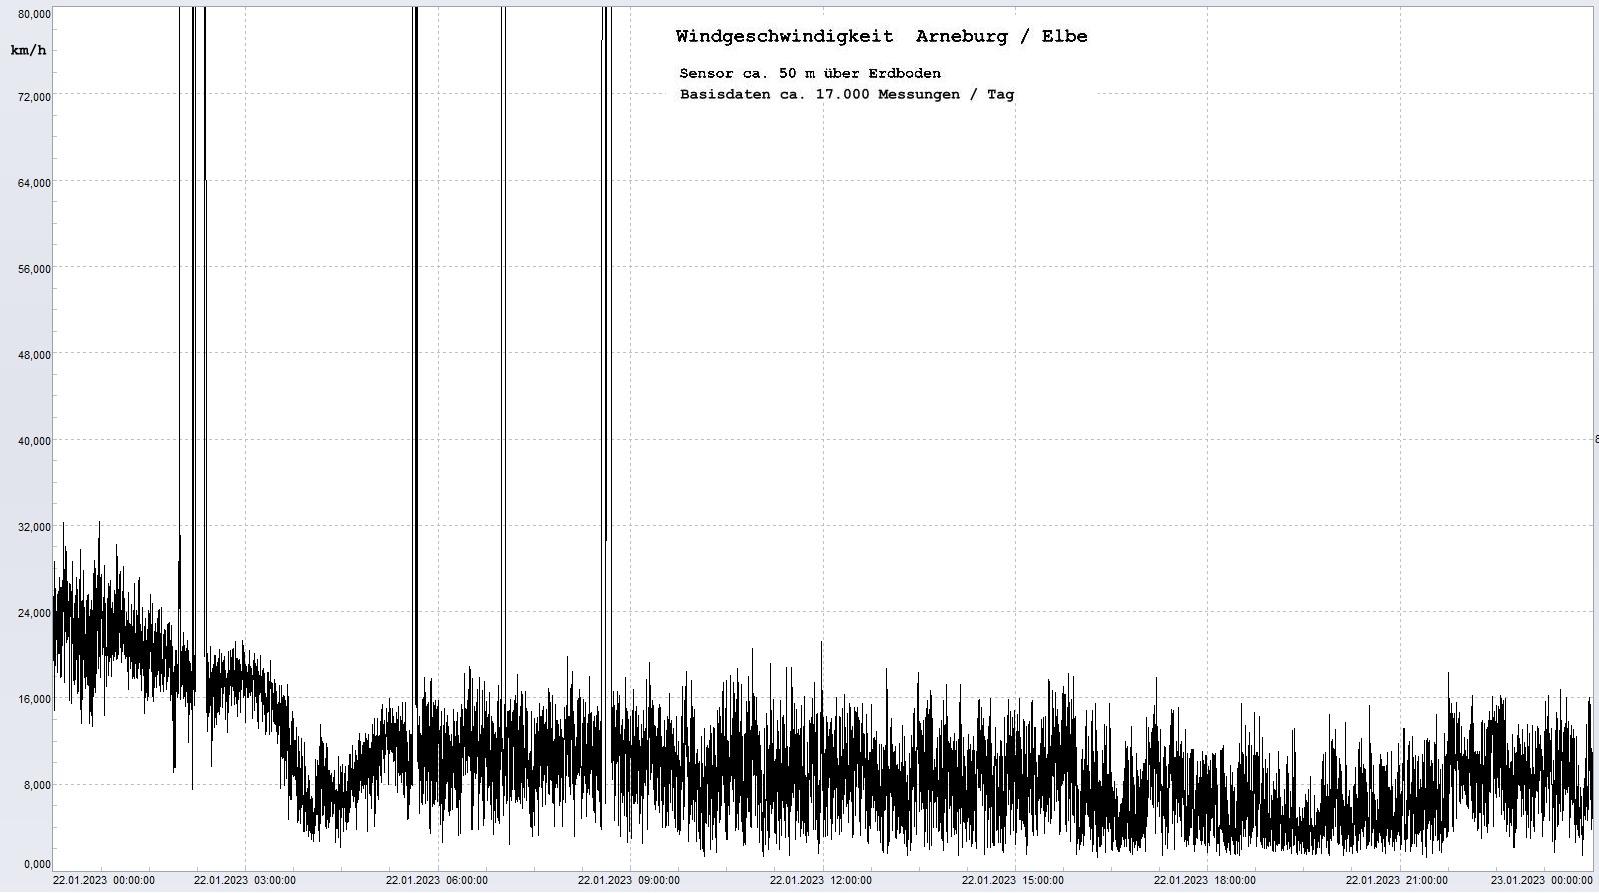 Arneburg Tages-Diagramm Winddaten, 22.01.2023
  Diagramm, Sensor auf Gebäude, ca. 50 m über Erdboden, Basis: 5s-Aufzeichnung